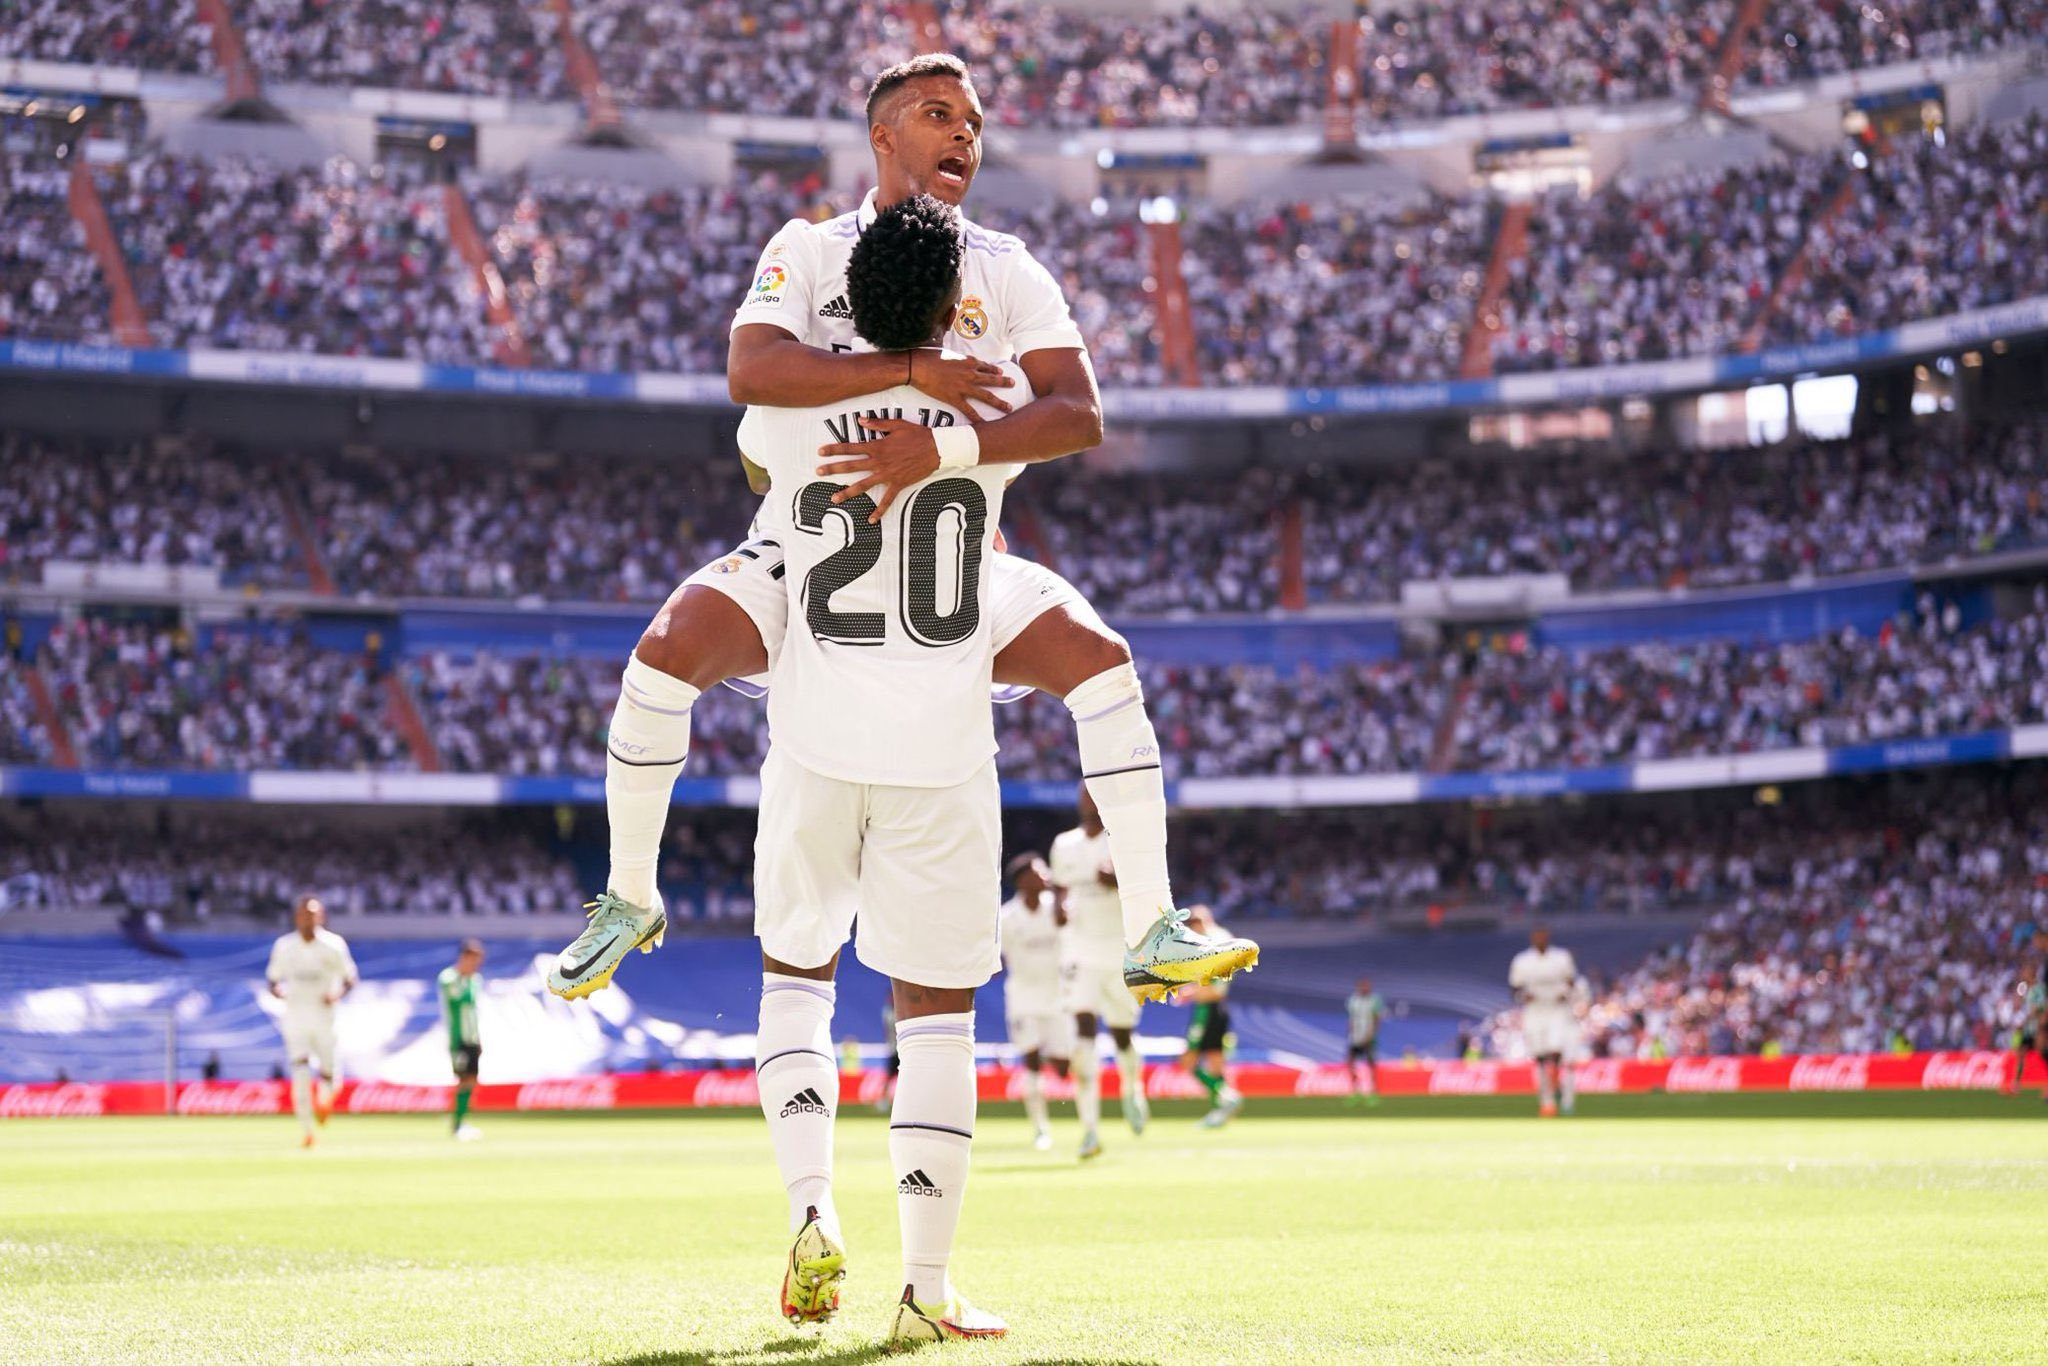 RealThị uy sức mạnh, Real Madrid thắng 4 trận liên tiếp - Bóng Đá